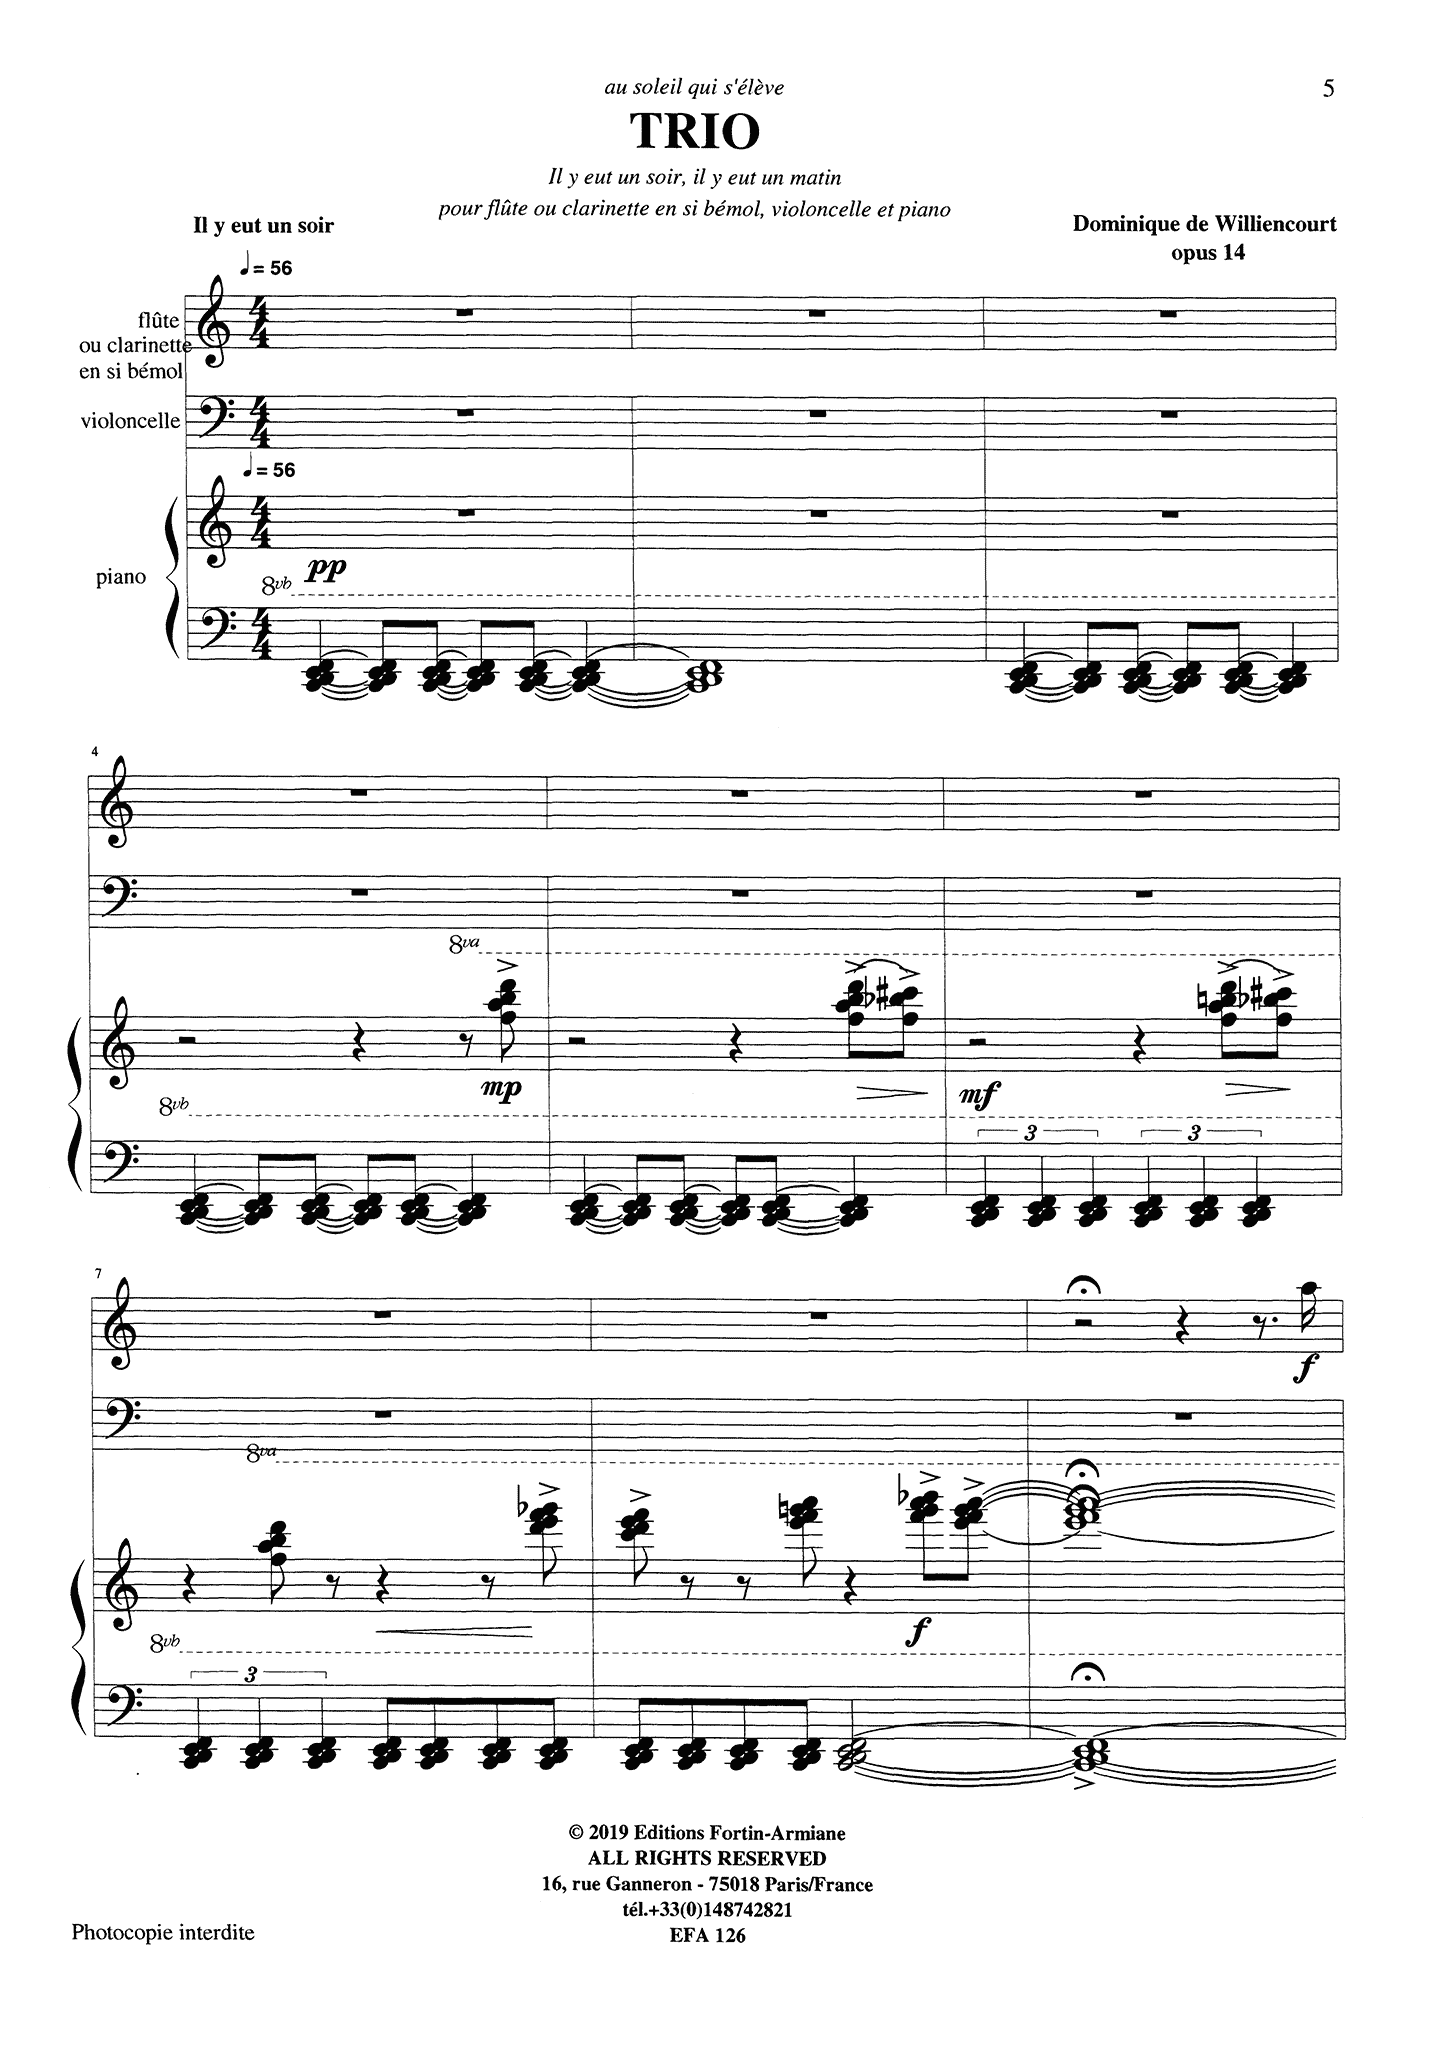 Dominique de Williencourt Trio, Op. 14 clarinet cello piano - Movement 1